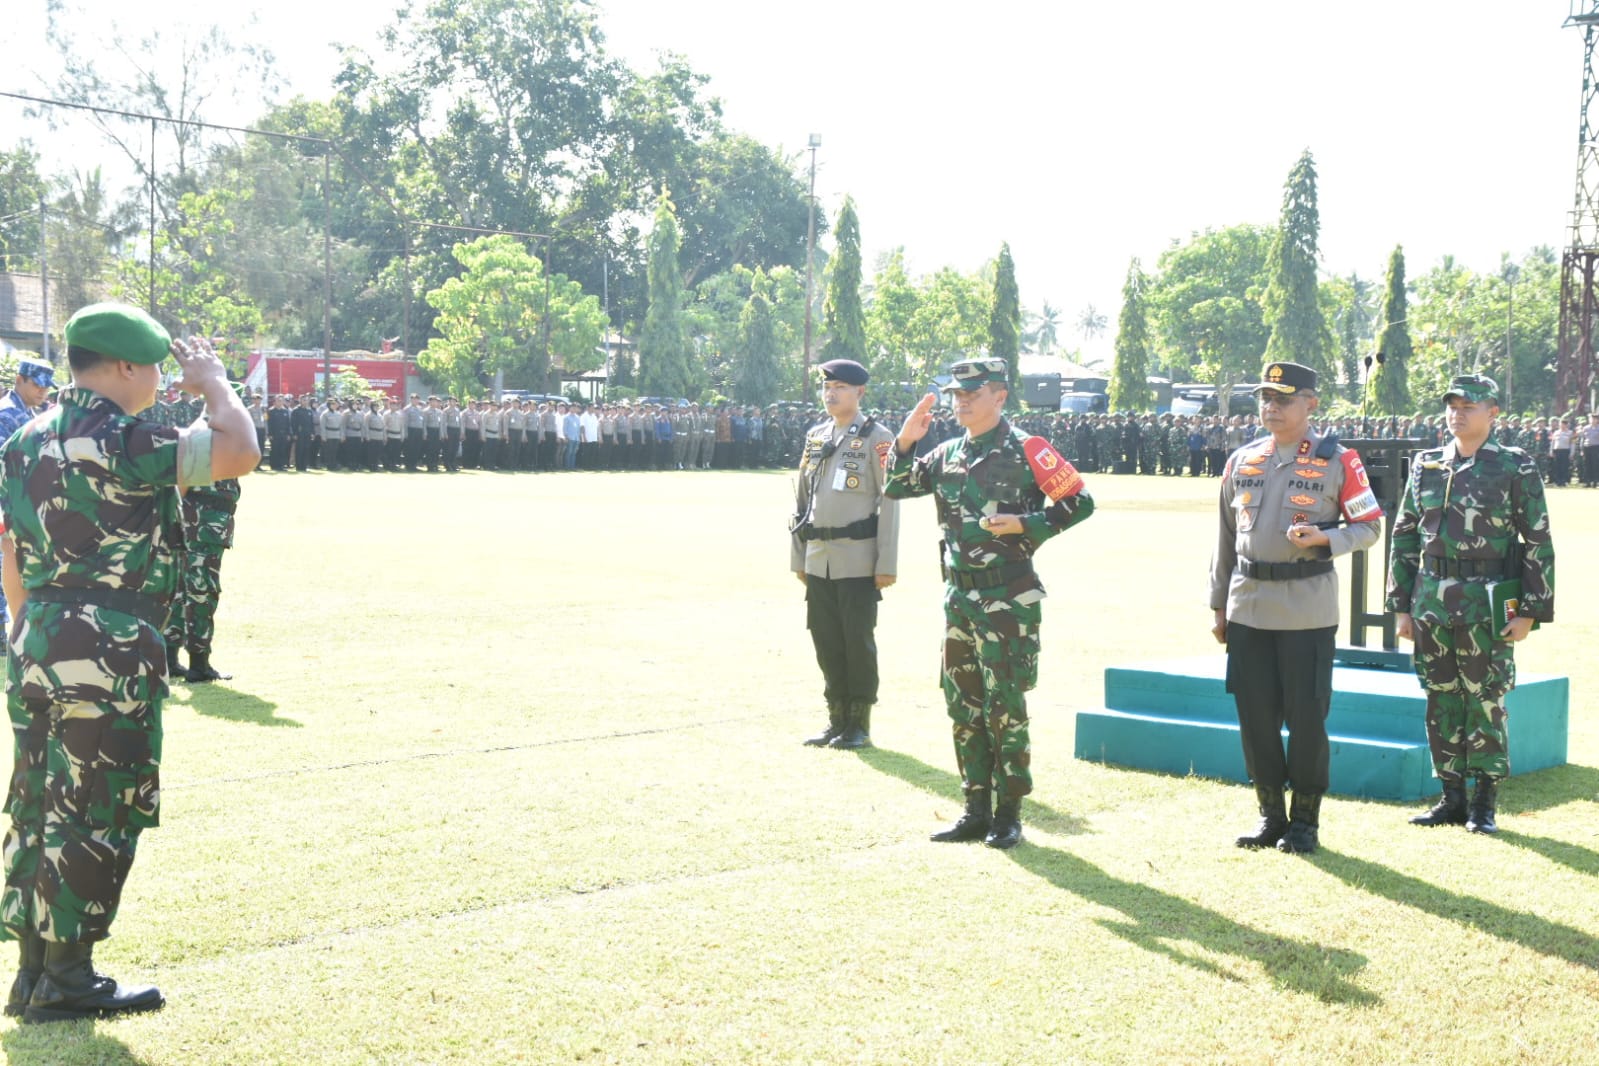 TNI Polri holds force to guard President's visit to Gorontalo – Gorontalo News